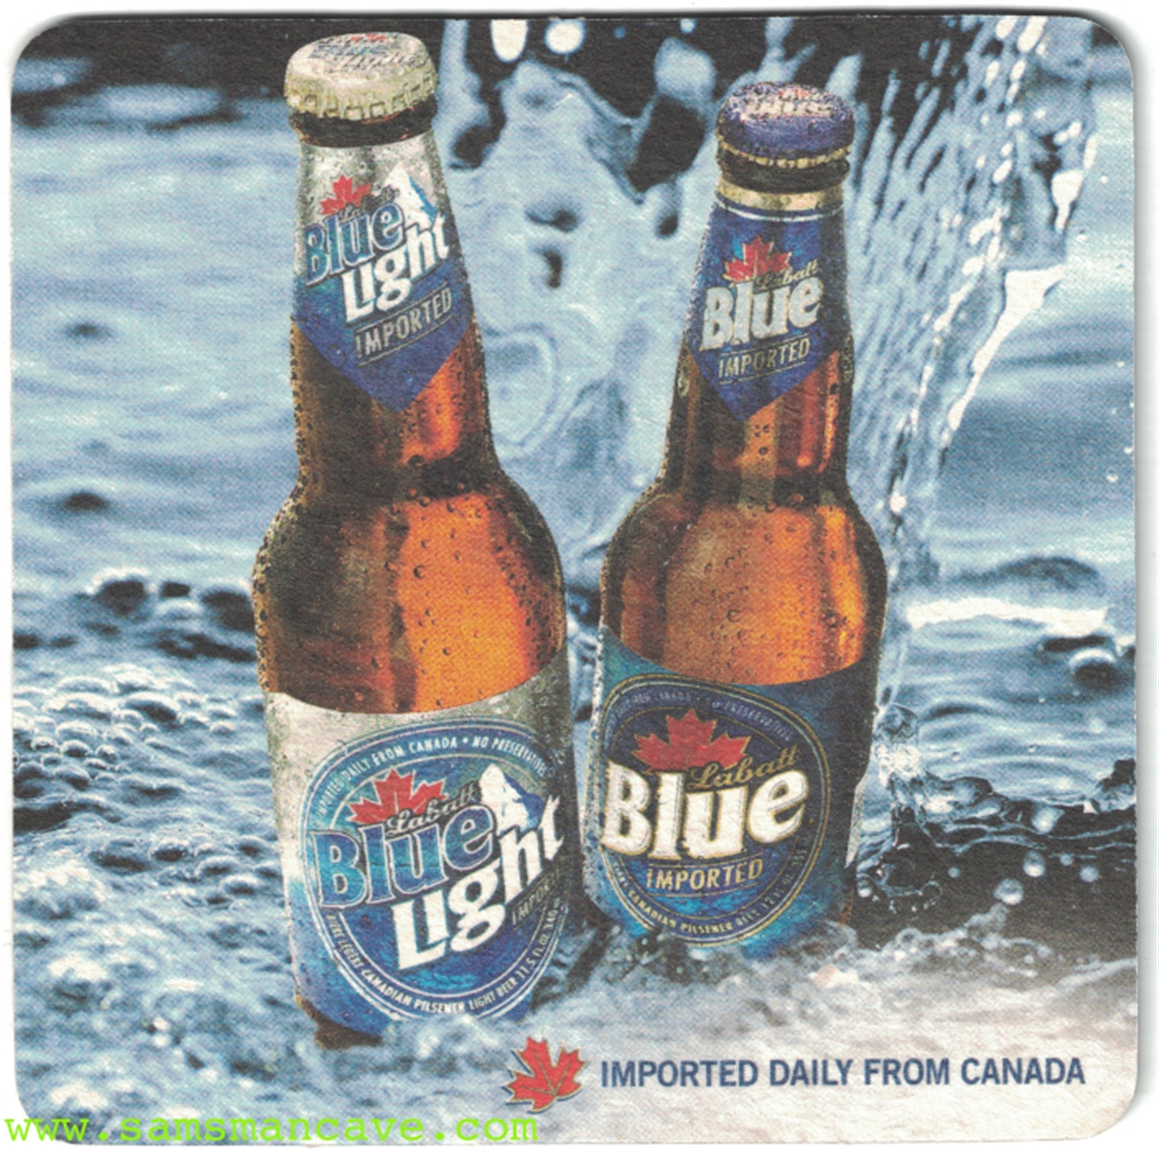 labatt-blue-labatt-blue-light-beer-coaster